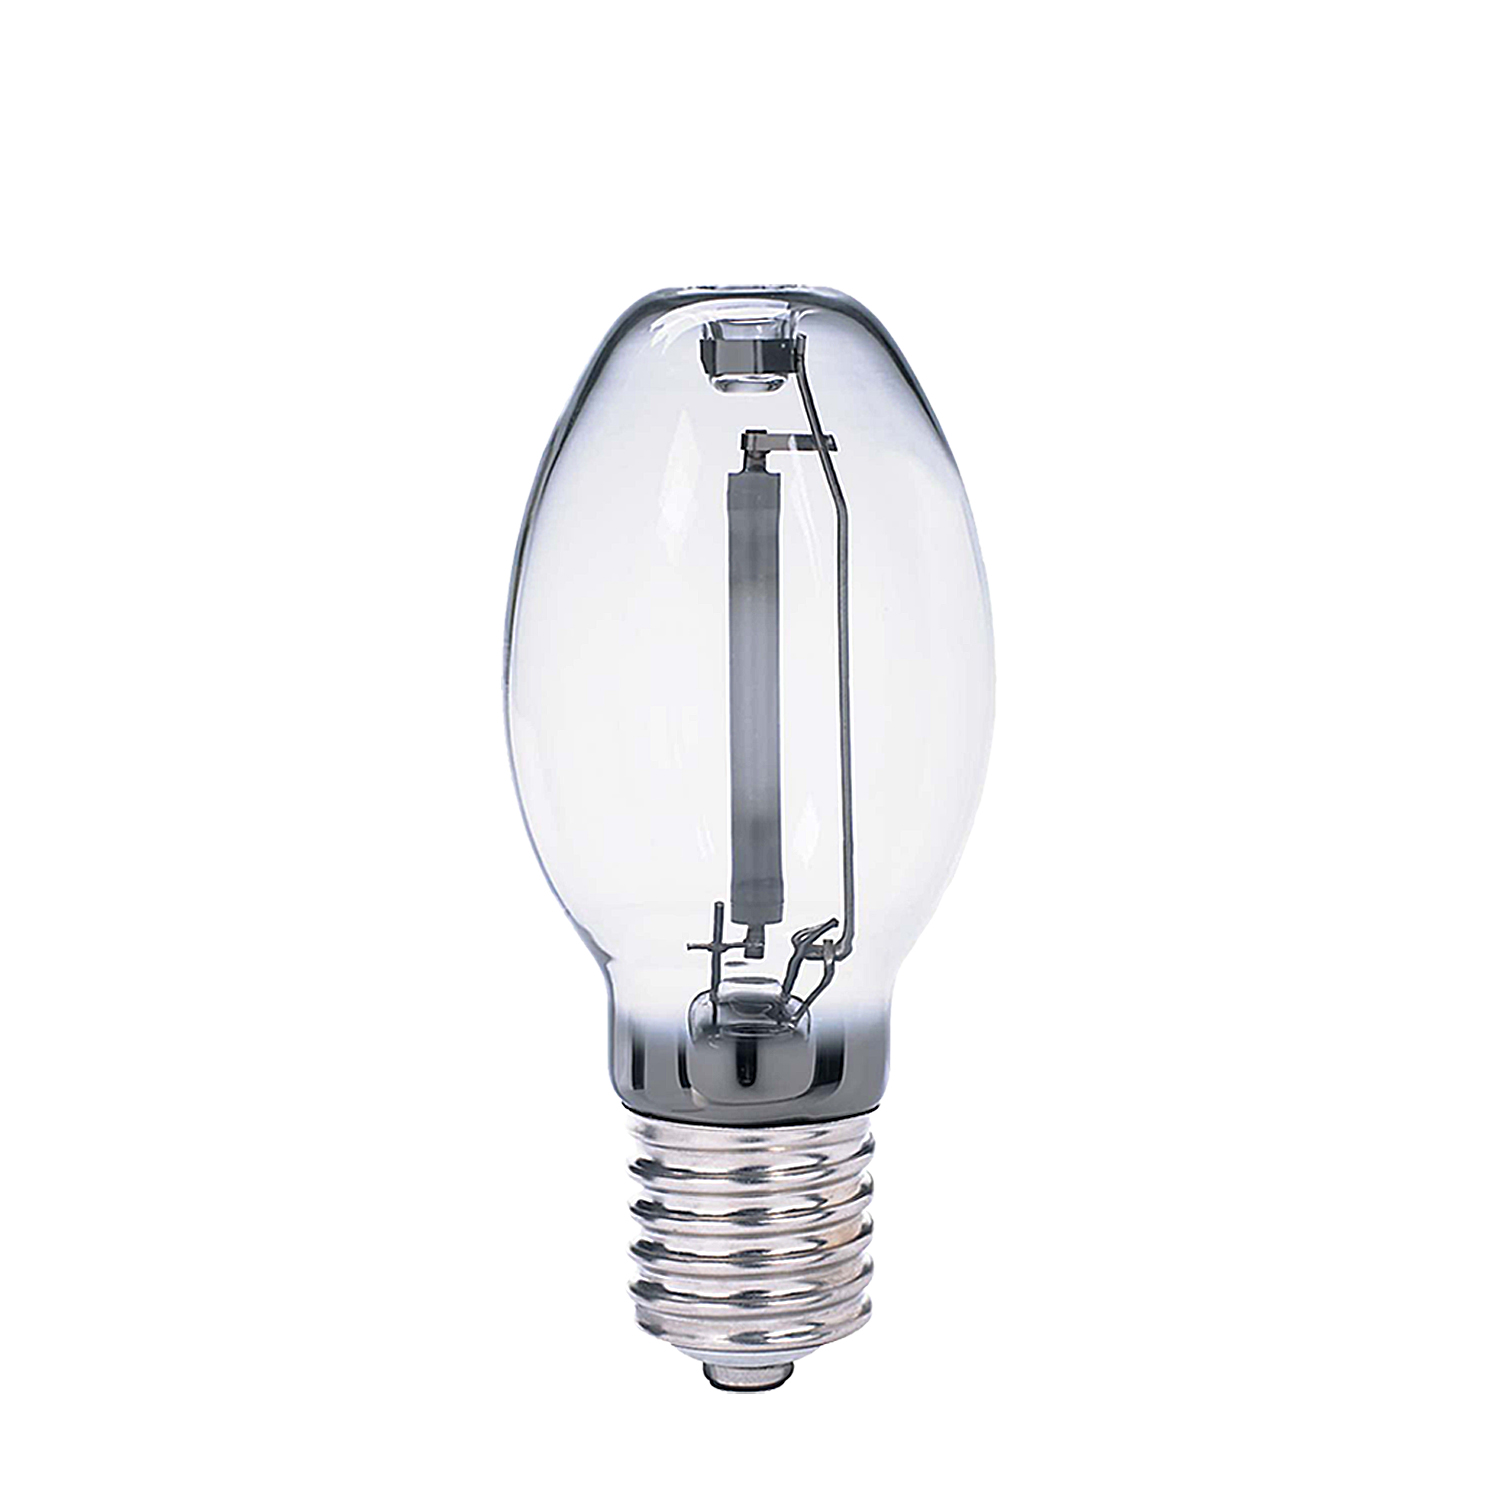 Купить лампочки ростов. Lamp,150w,sodium,chalmtlt,u6994-0150,e40. H3c желтки лампочка.